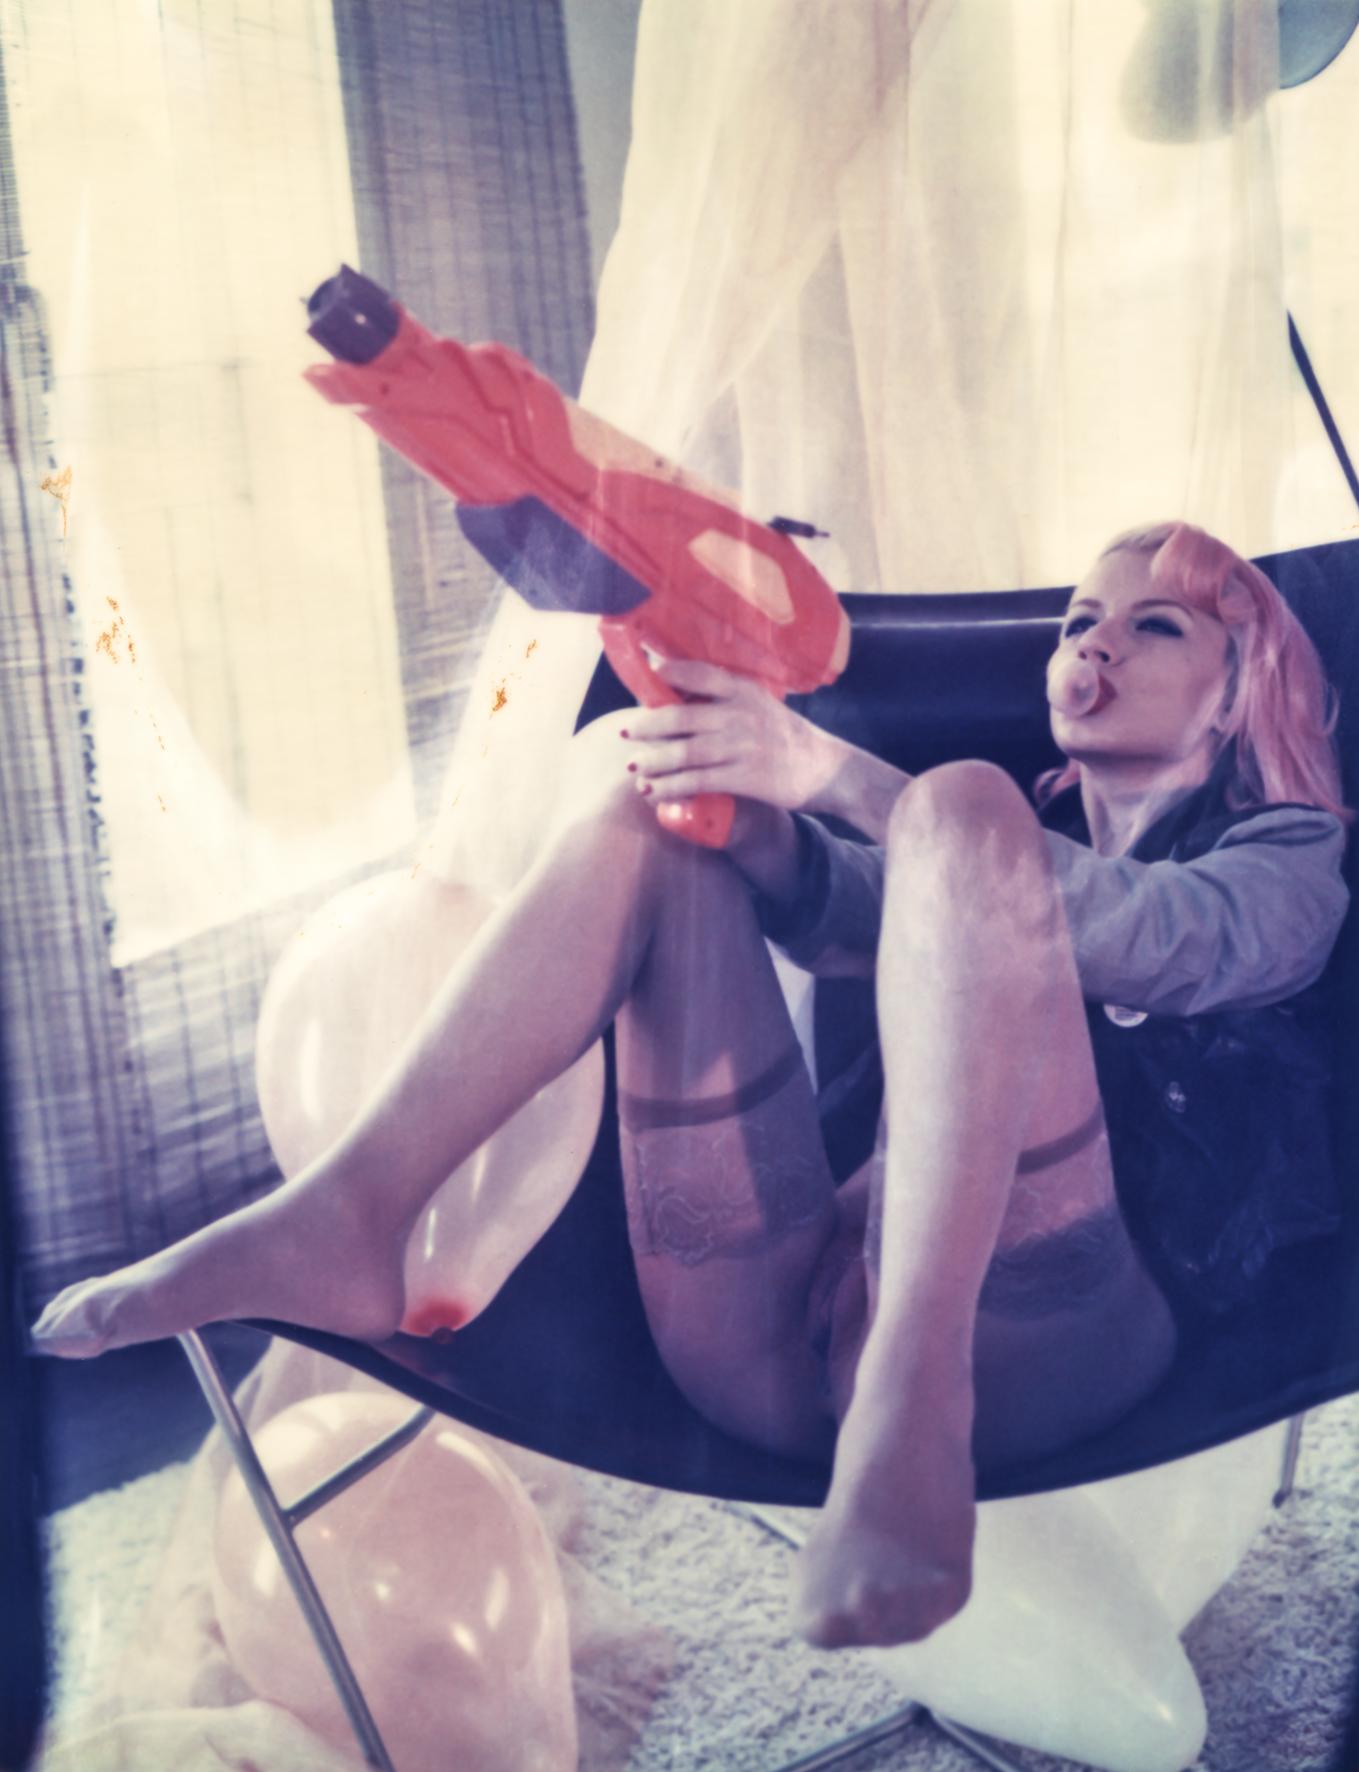 Carmen de Vos Color Photograph - Bubble Gun #04 [Odd Stories] - Nude, Polaroid, Photography, Contemporary